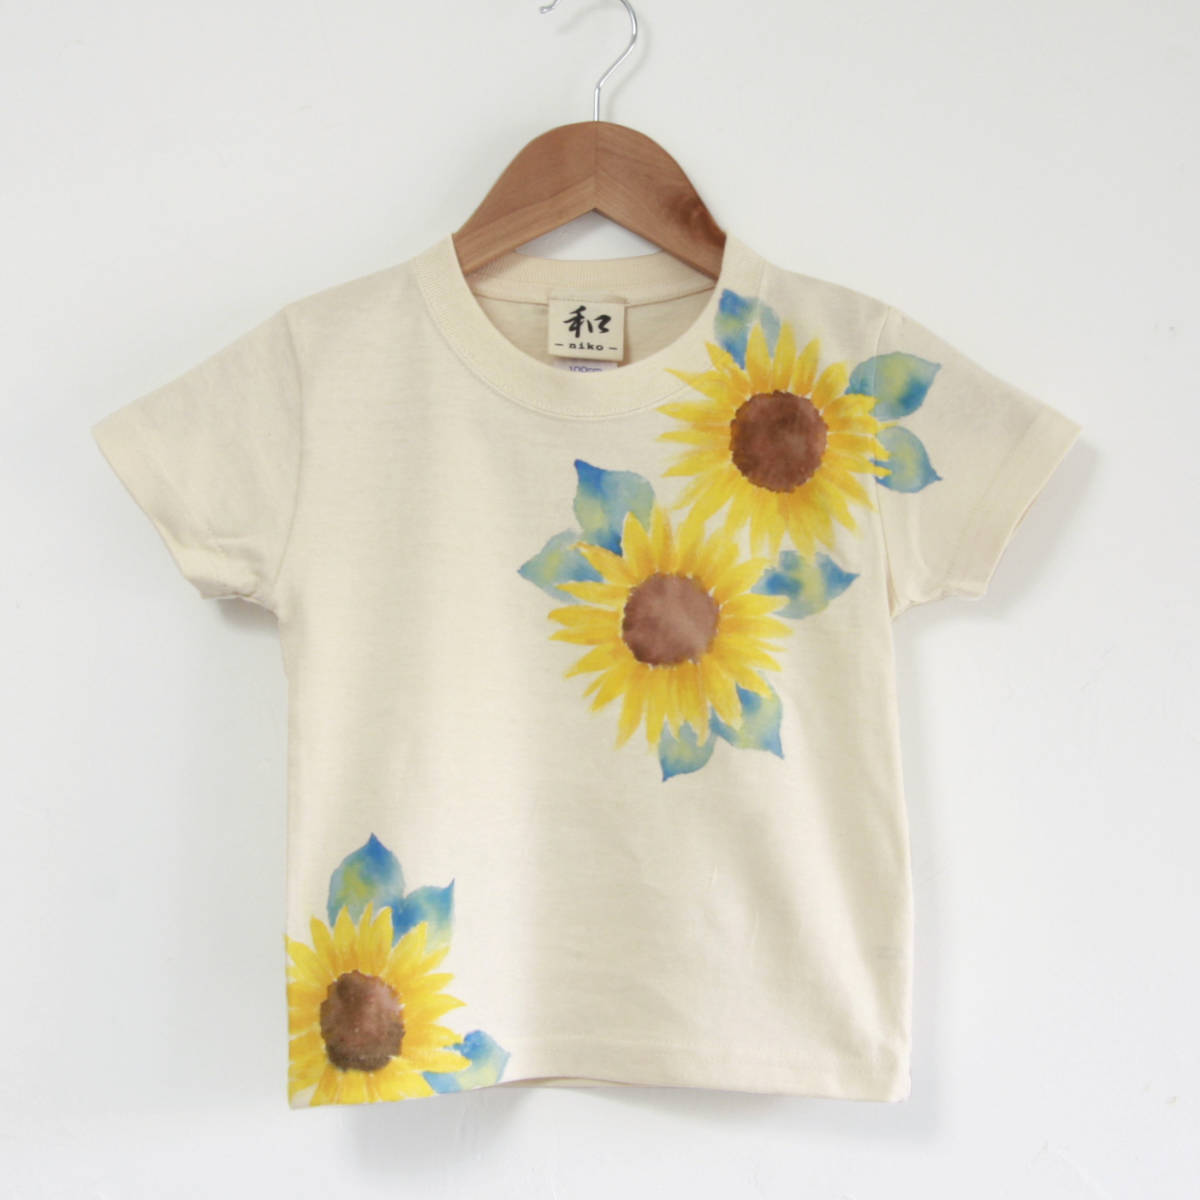 아동복, 어린이 티셔츠, 사이즈 110, 자연스러운, 해바라기 패턴, 수공, 손으로 그린 티셔츠, 꽃무늬, 여름, 선물, 상의, 반소매 티셔츠, 110(105~114cm)